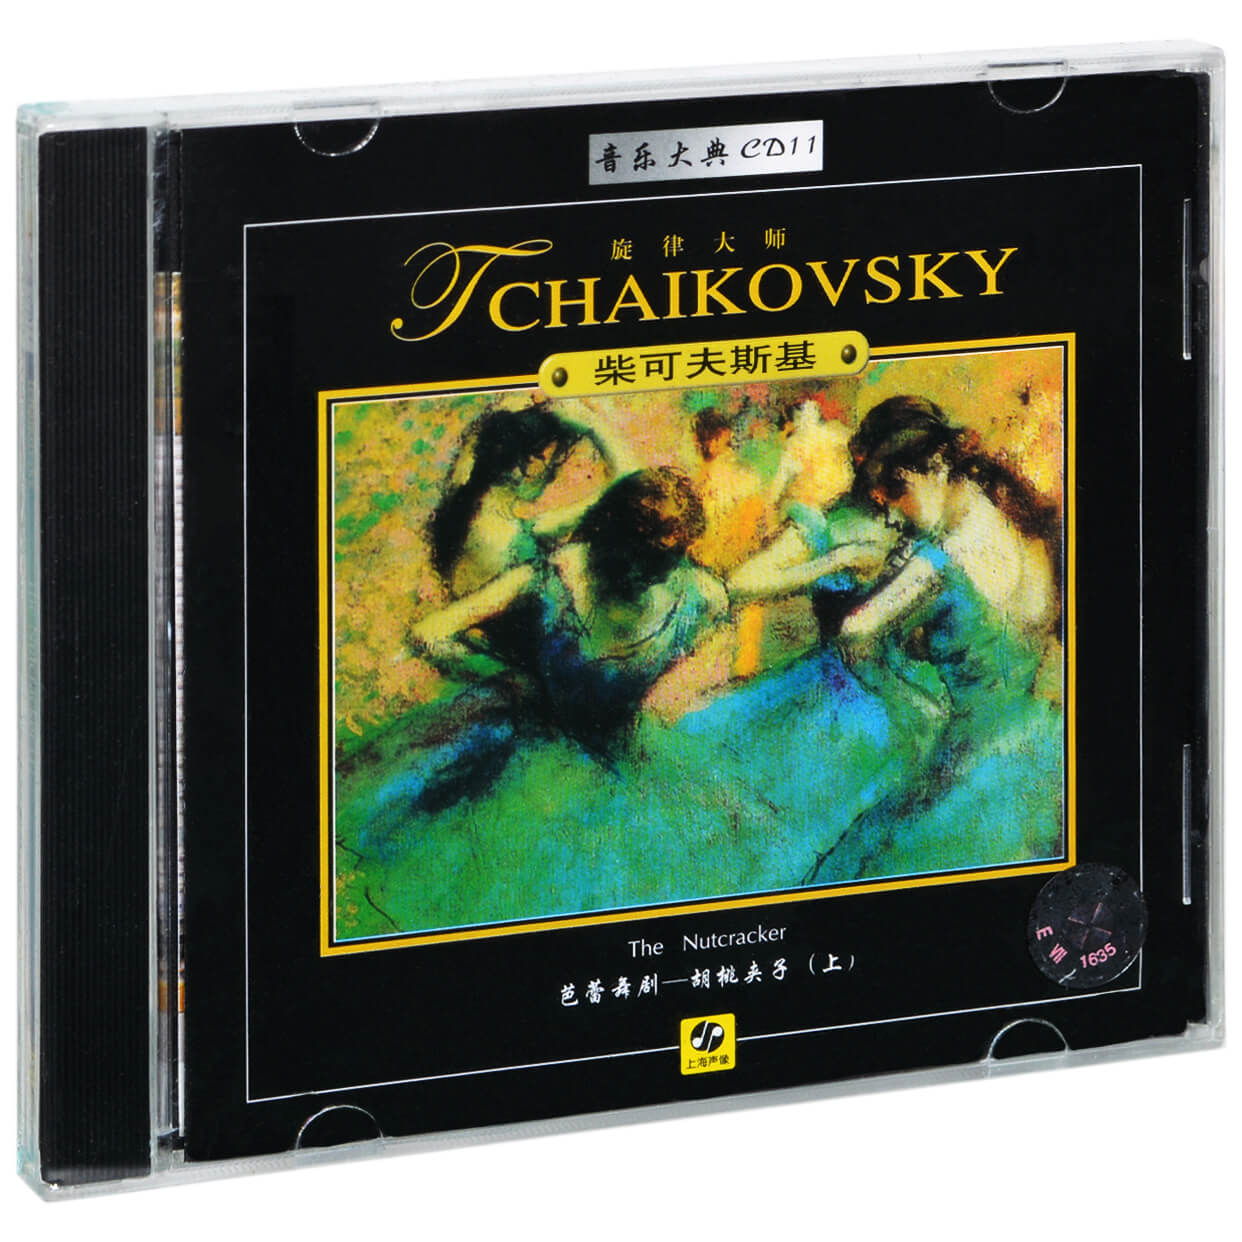 正版音乐大典11 柴可夫斯基 芭蕾舞剧-胡桃夹子(上) 古典唱片CD碟